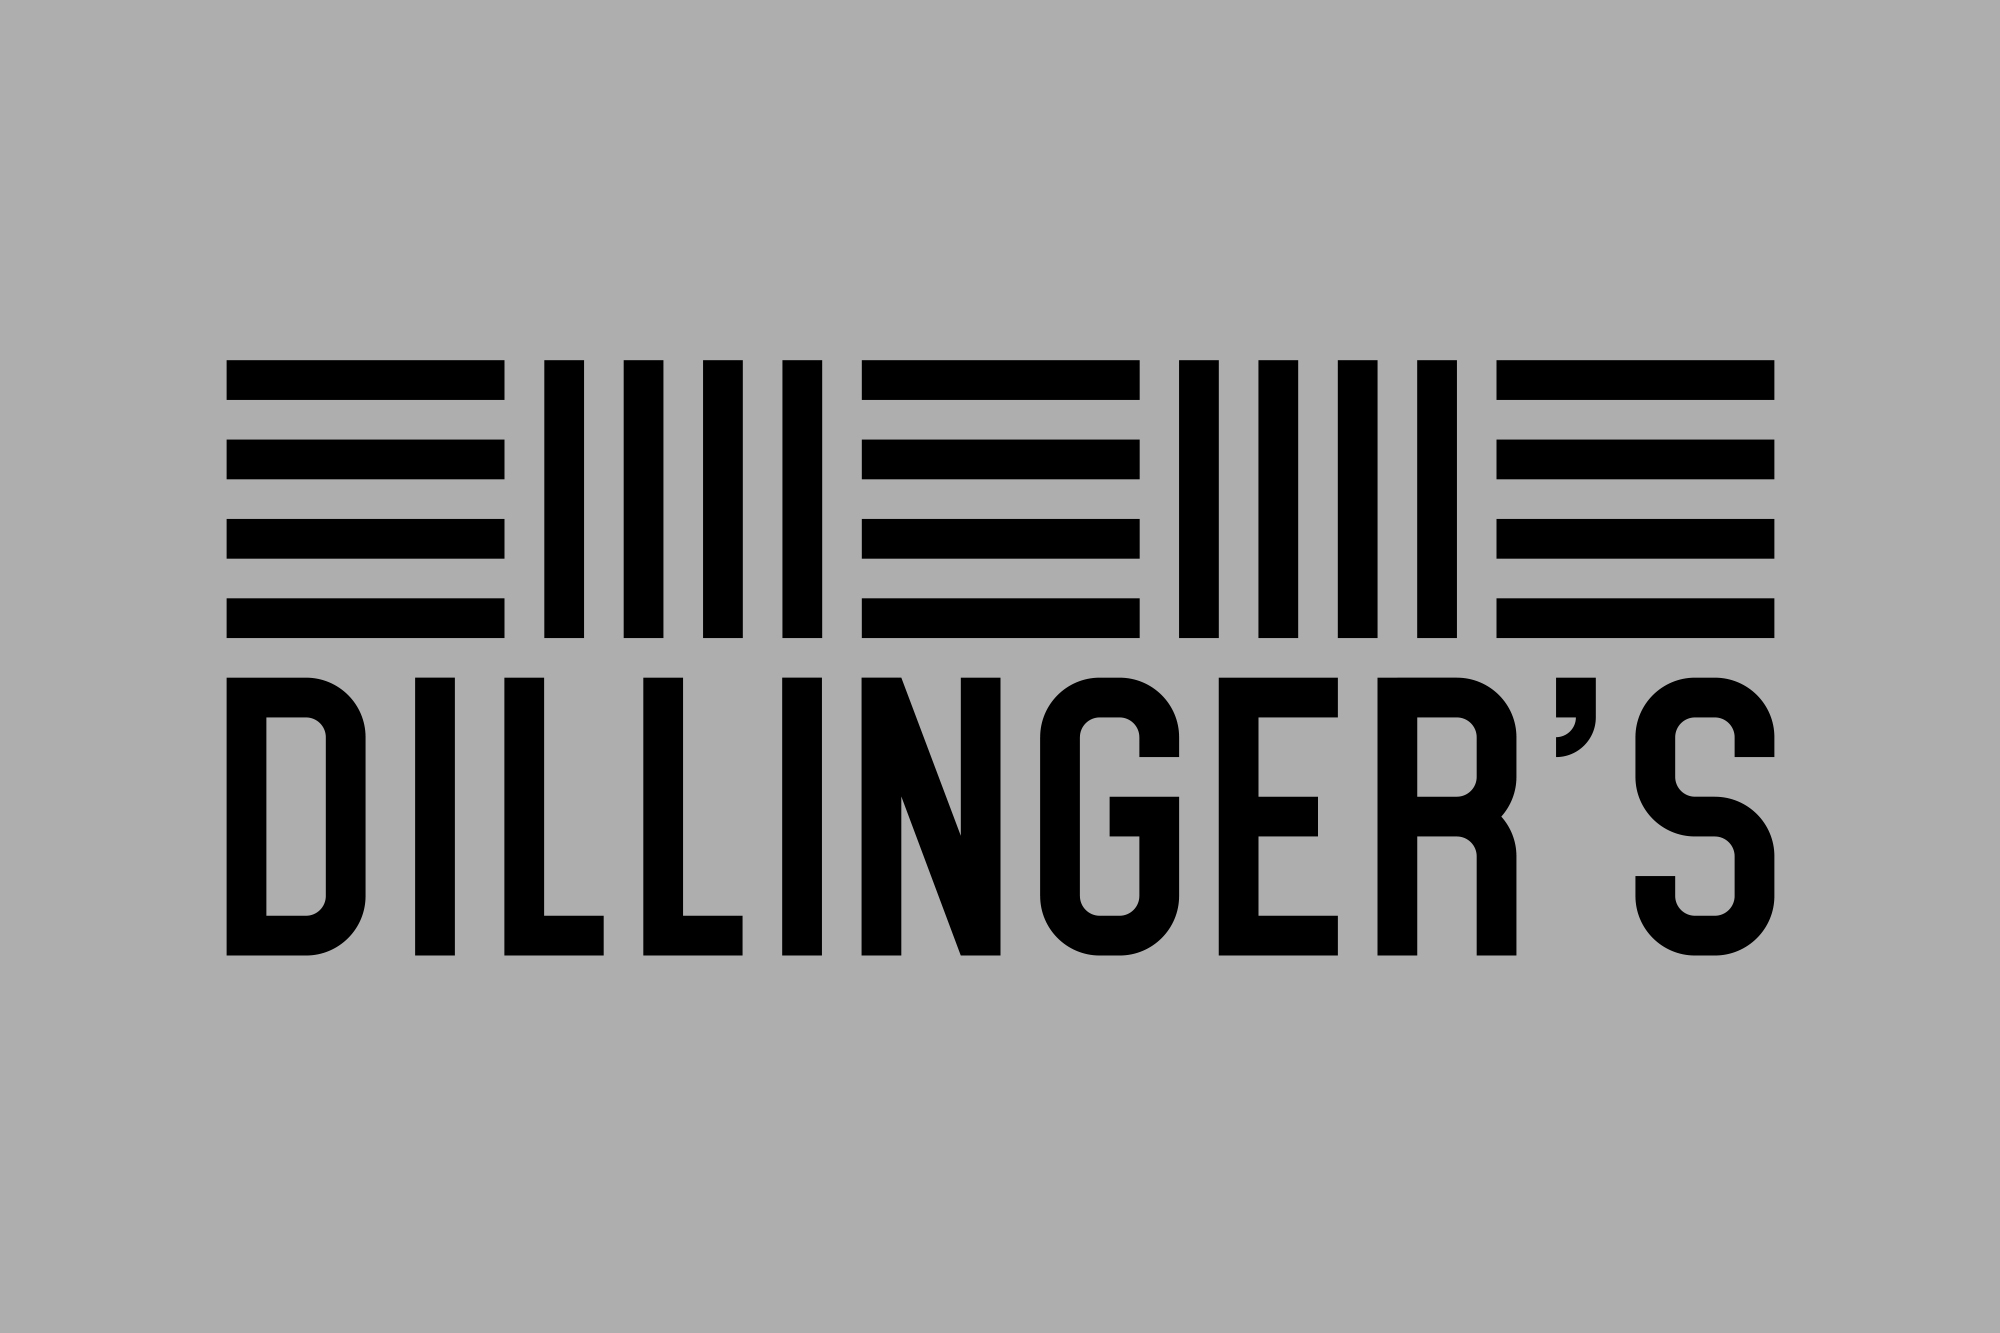 Cover image: Dillinger’s Restaurant